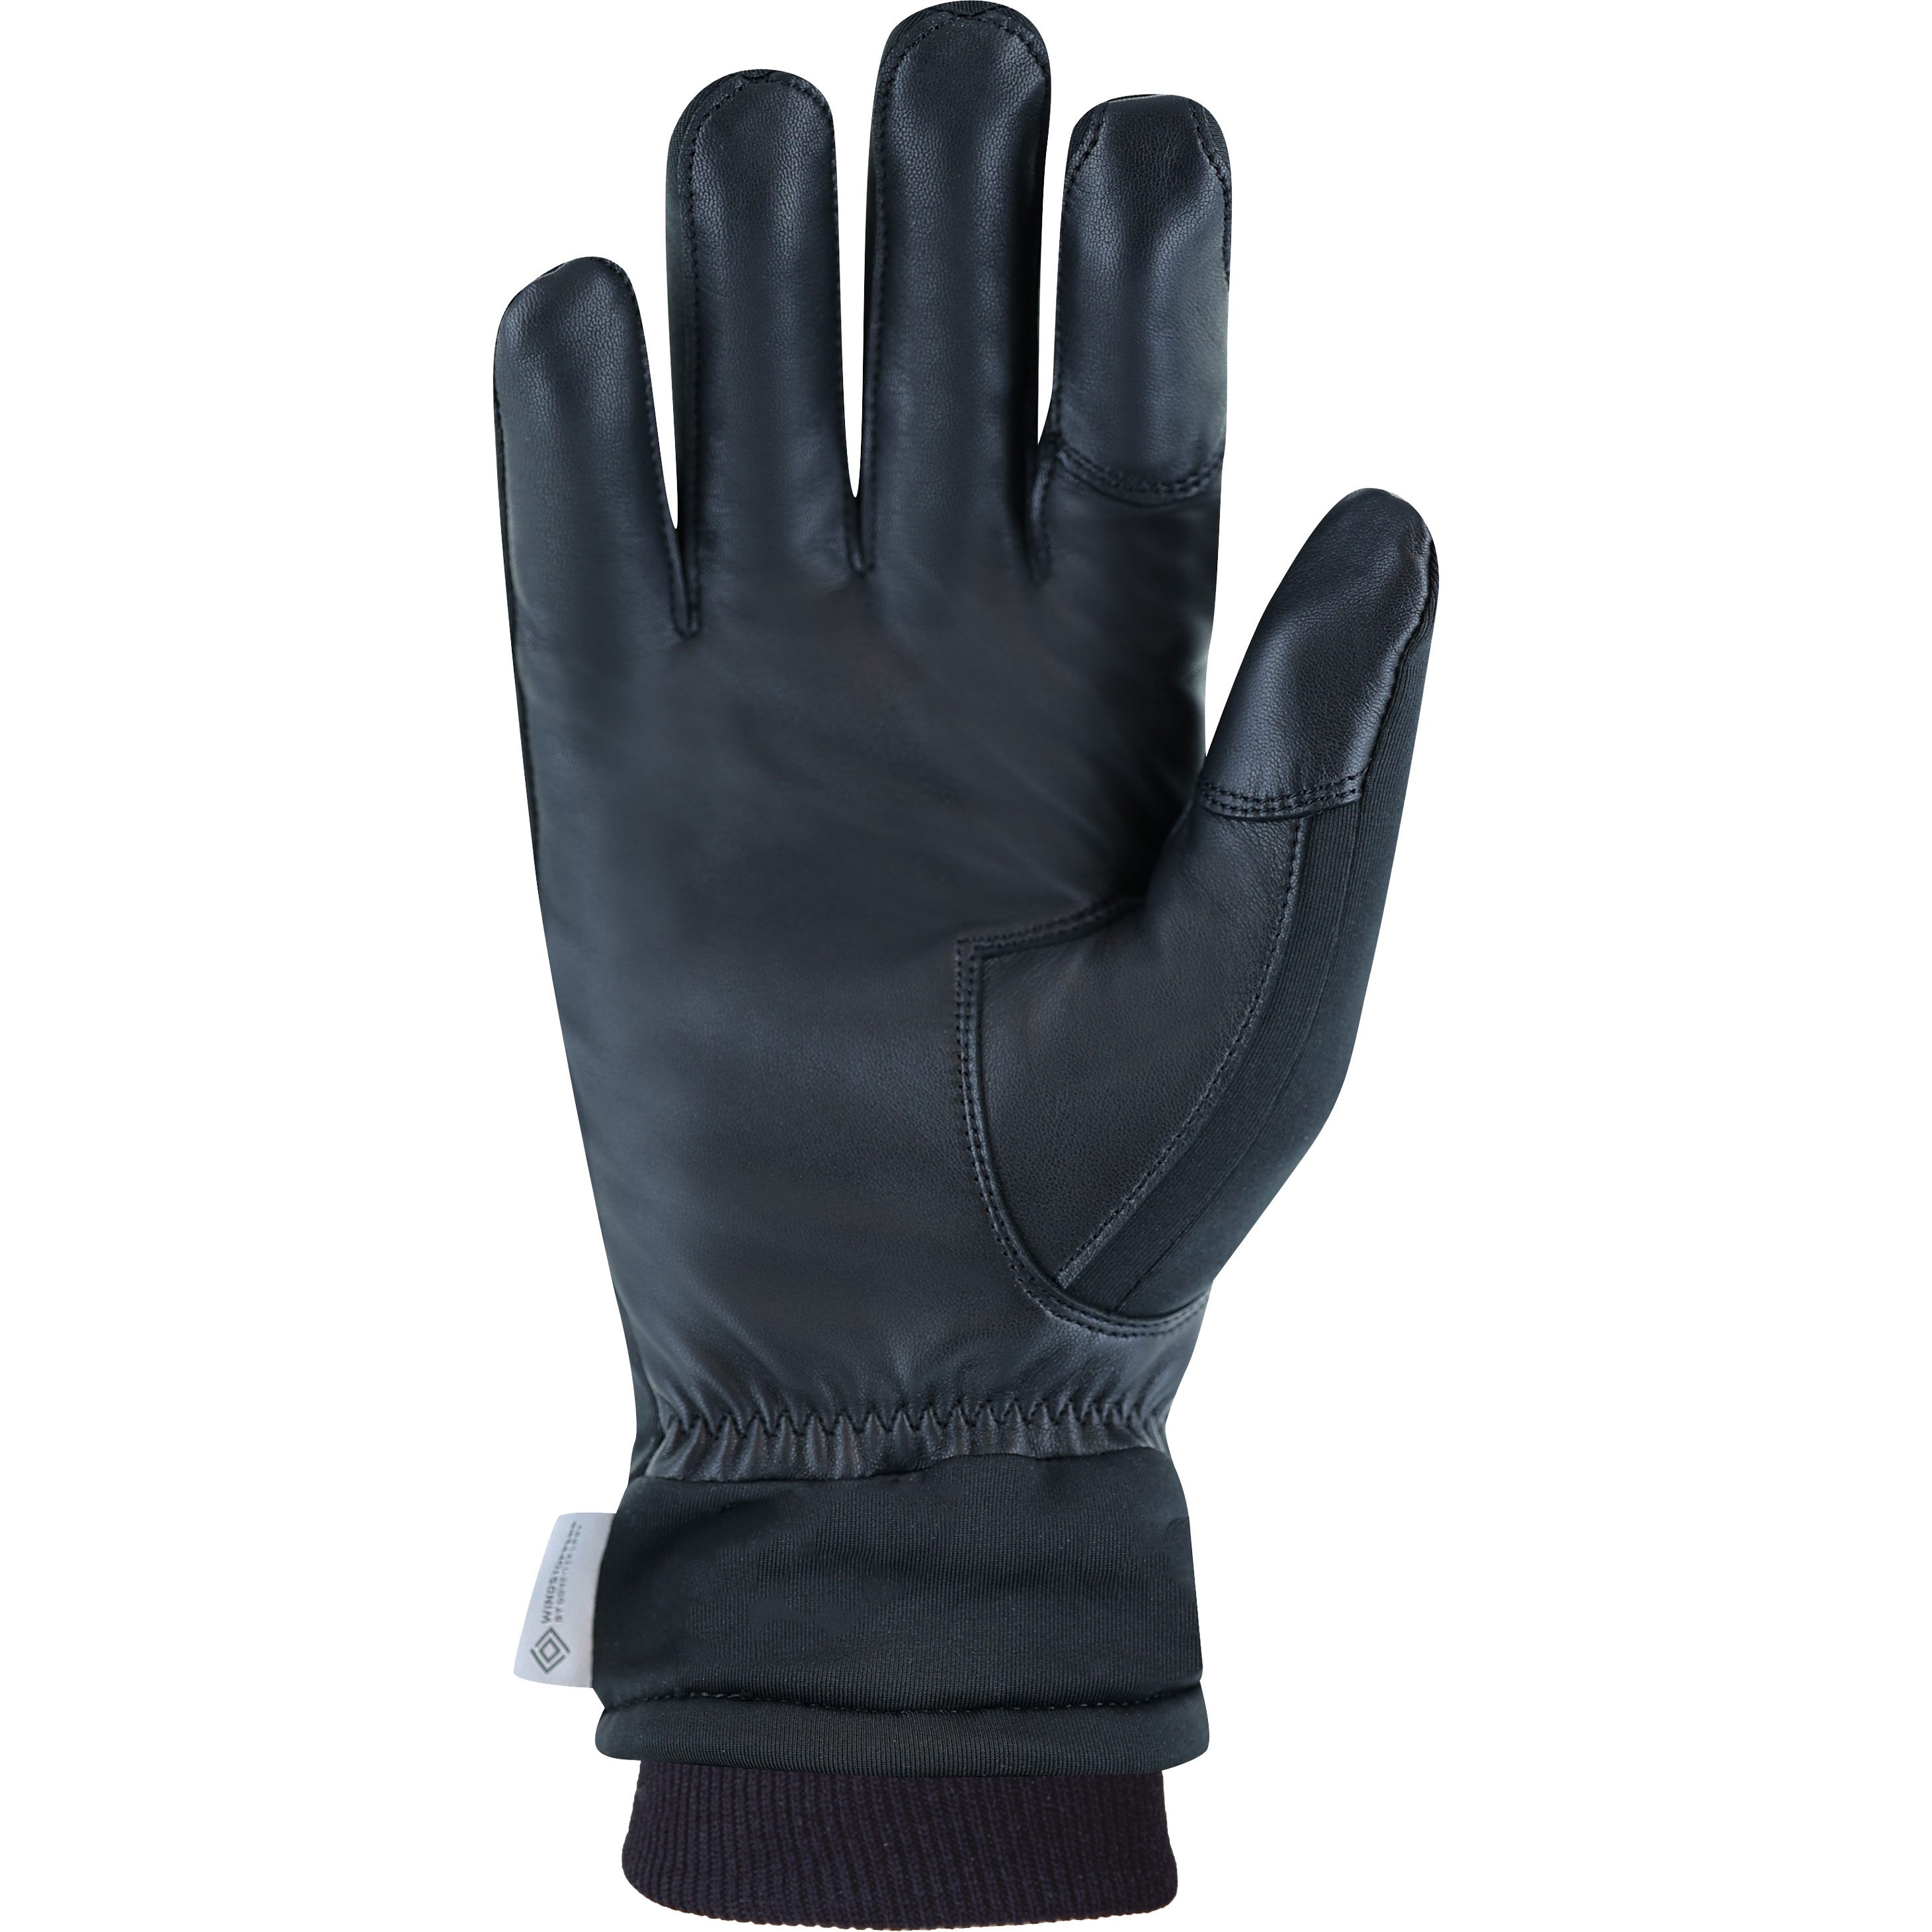 Roeckl Sports Shop kaufen Sport - schwarz 2 Kolon Handschuhe im Bittl